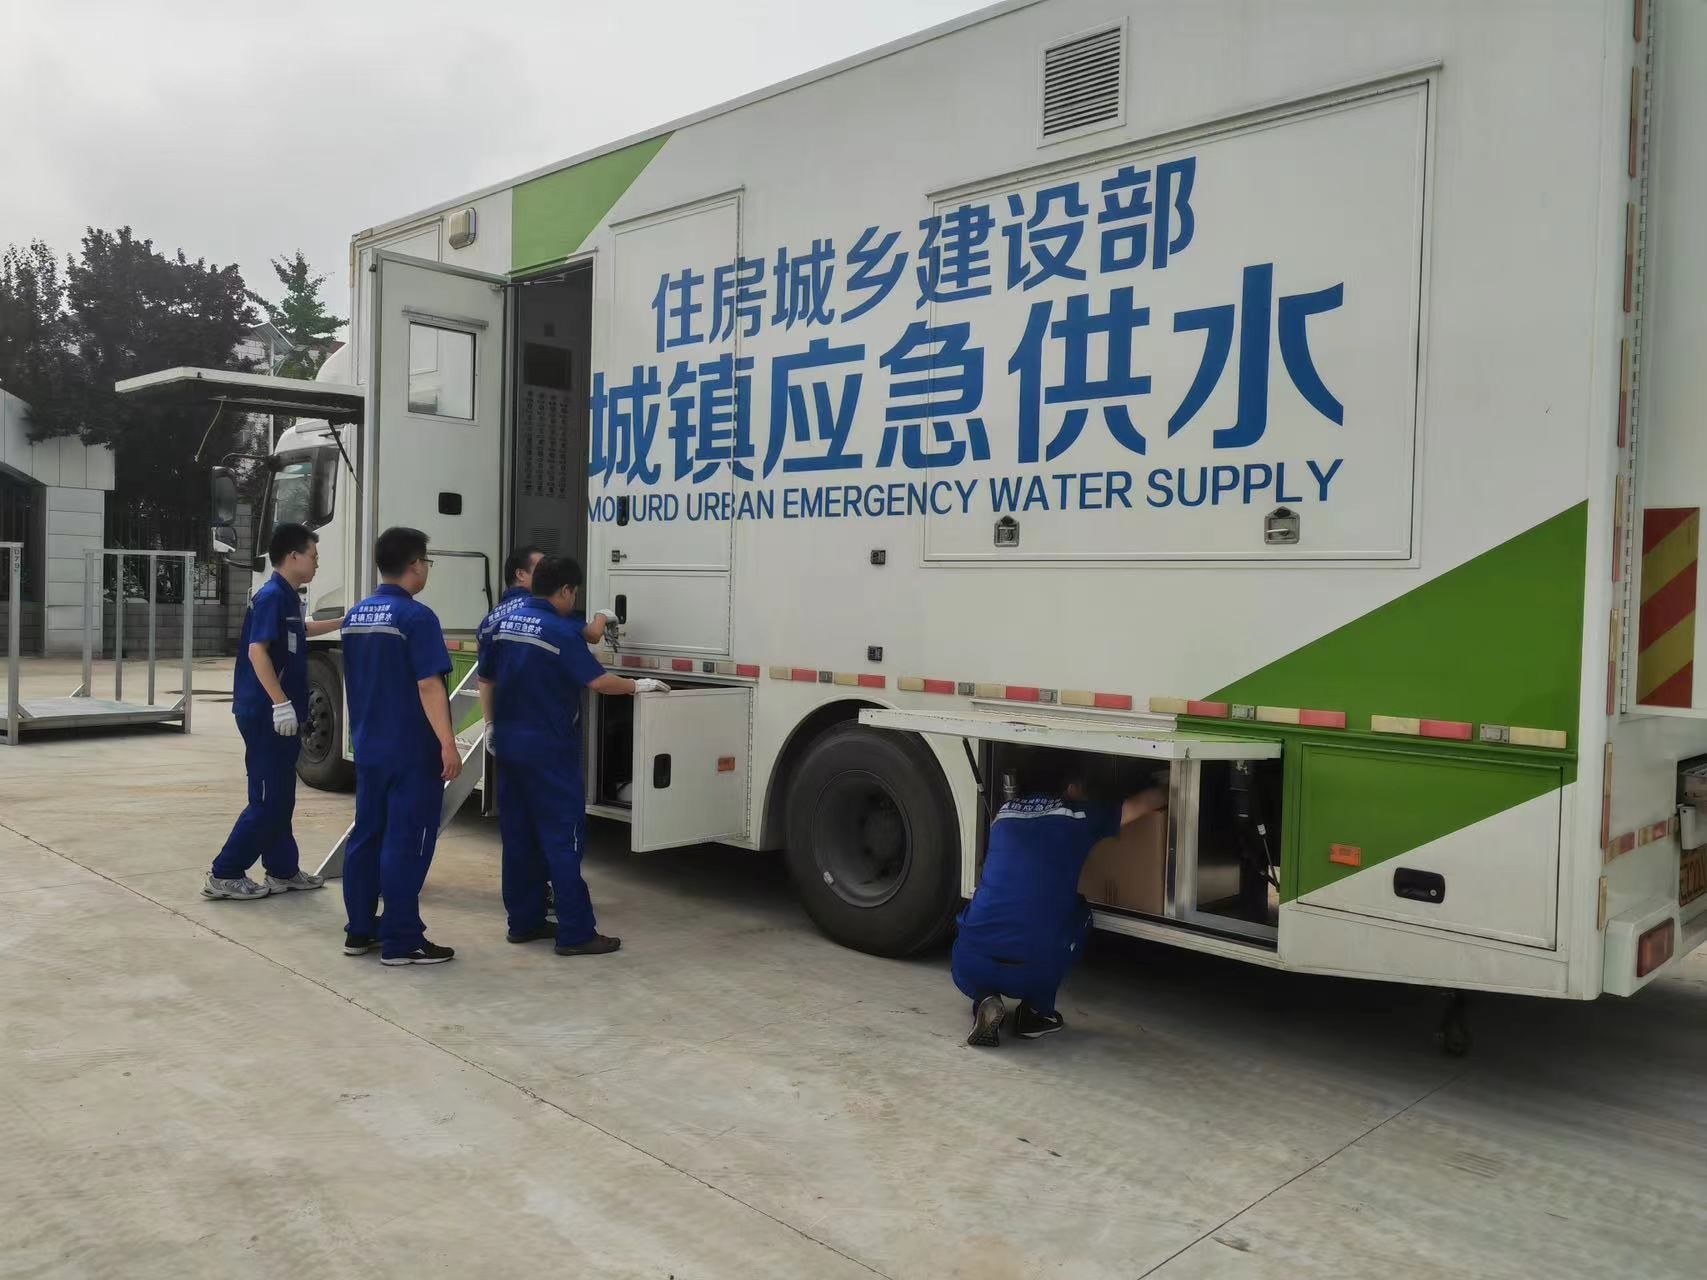 住房城乡建设部已调派国家应急供水支援涿州。